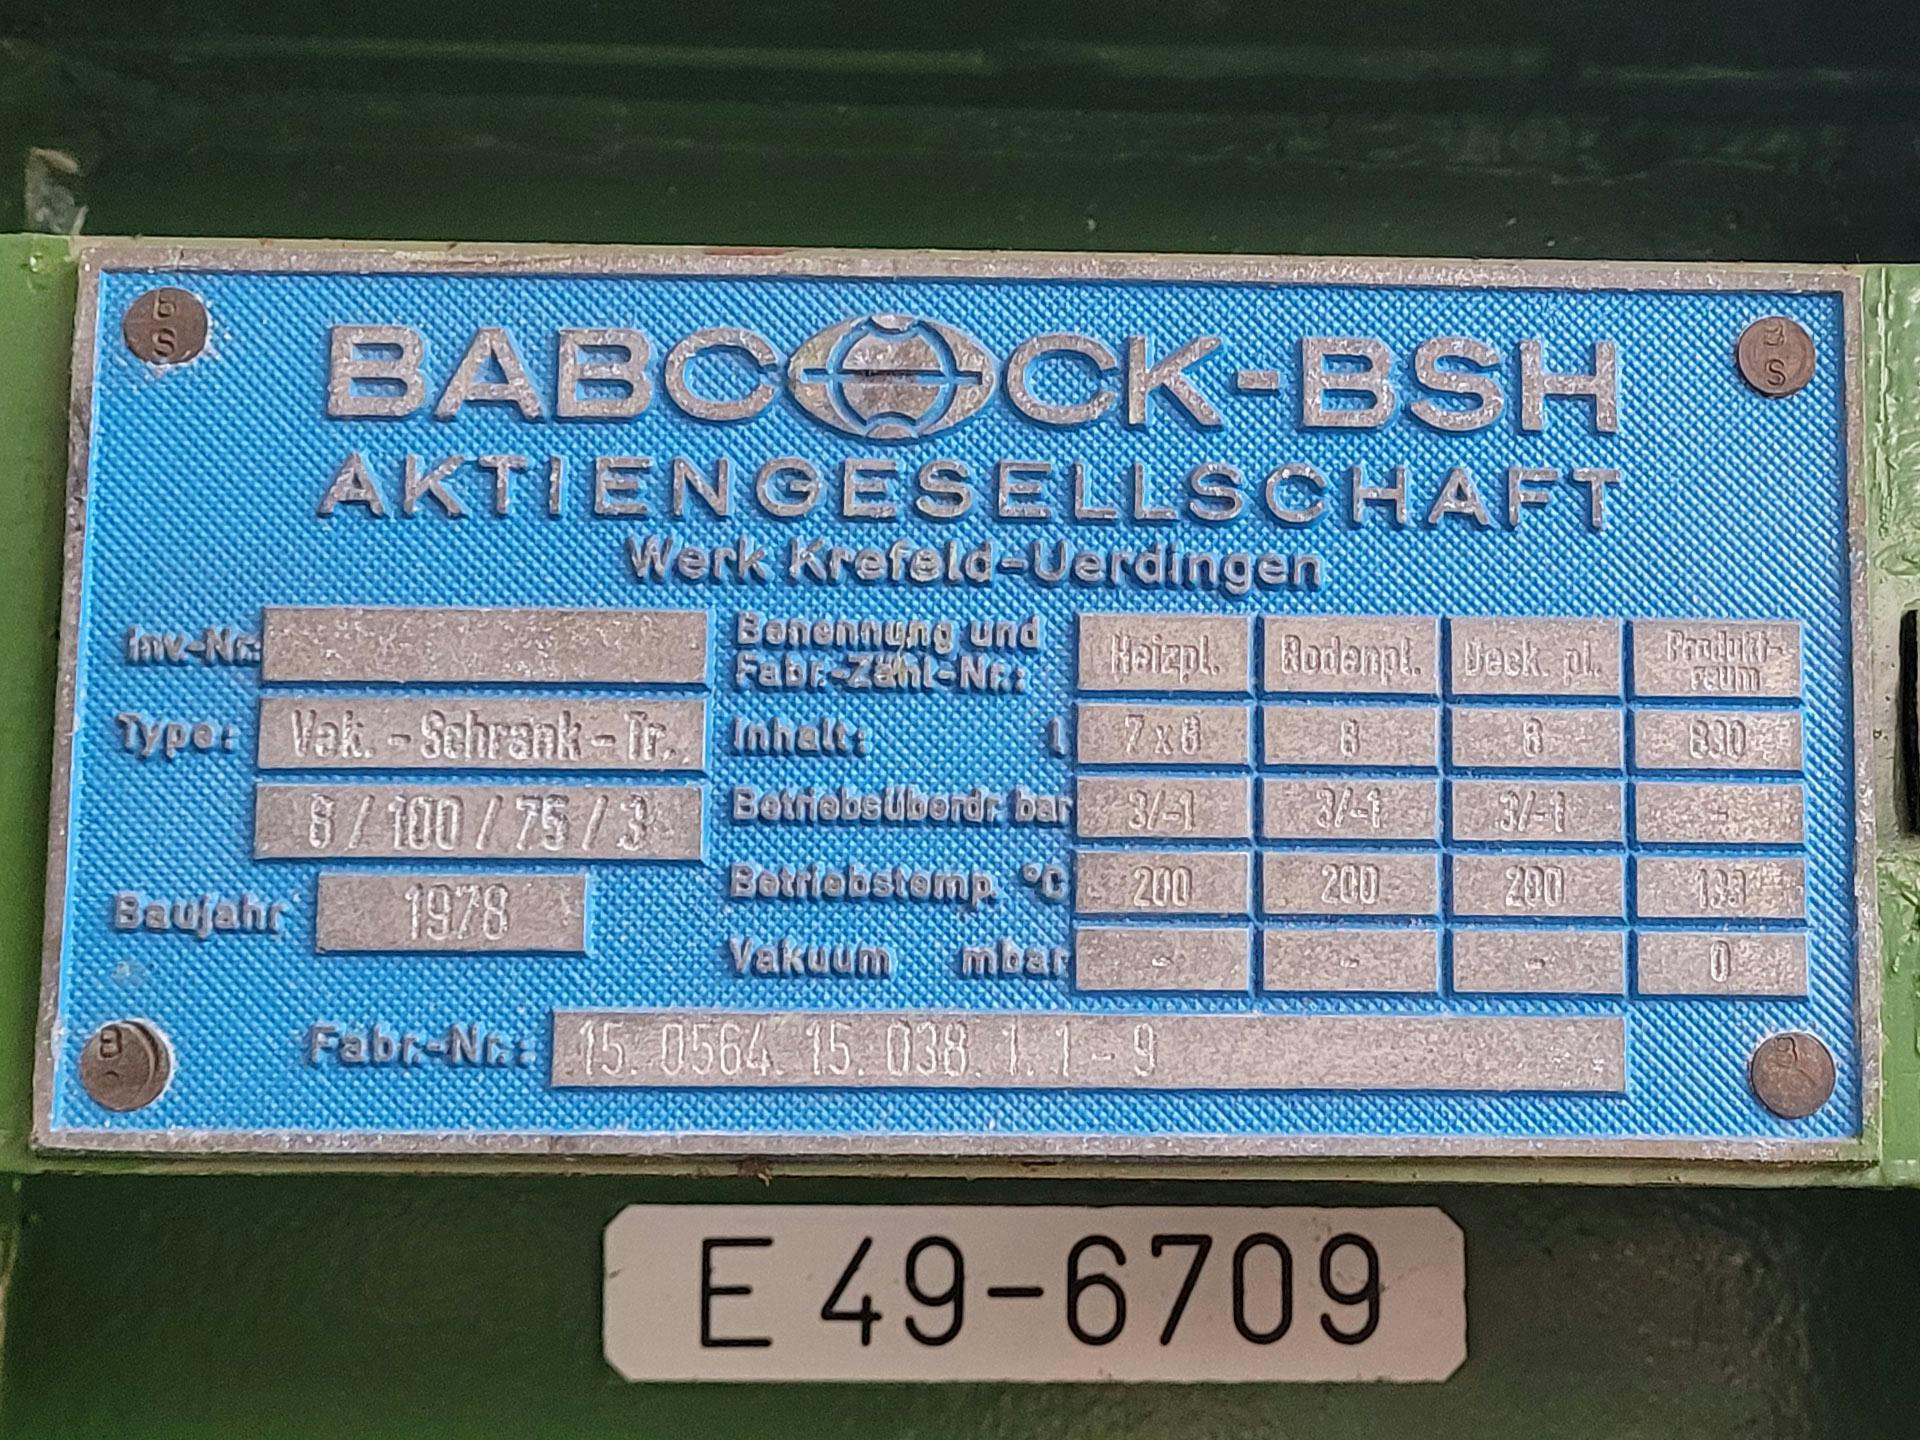 Babcock-BSH 8/100/75-3 - Trockenschrank - image 4